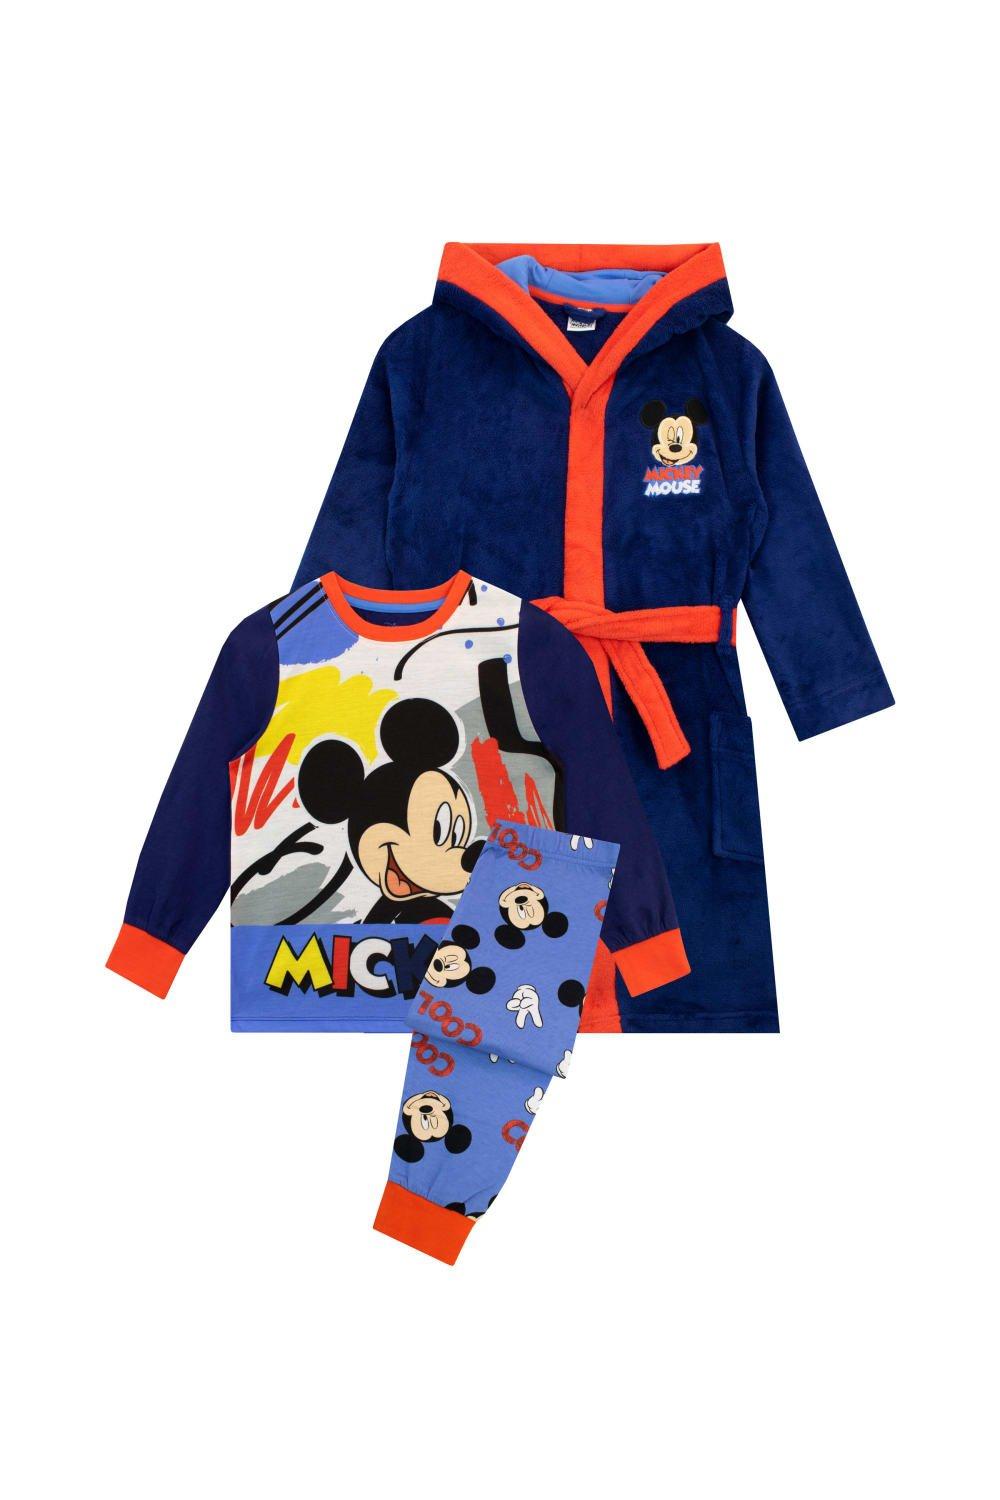 Комплект халата и пижамы с Микки Маусом Disney, синий фотографии